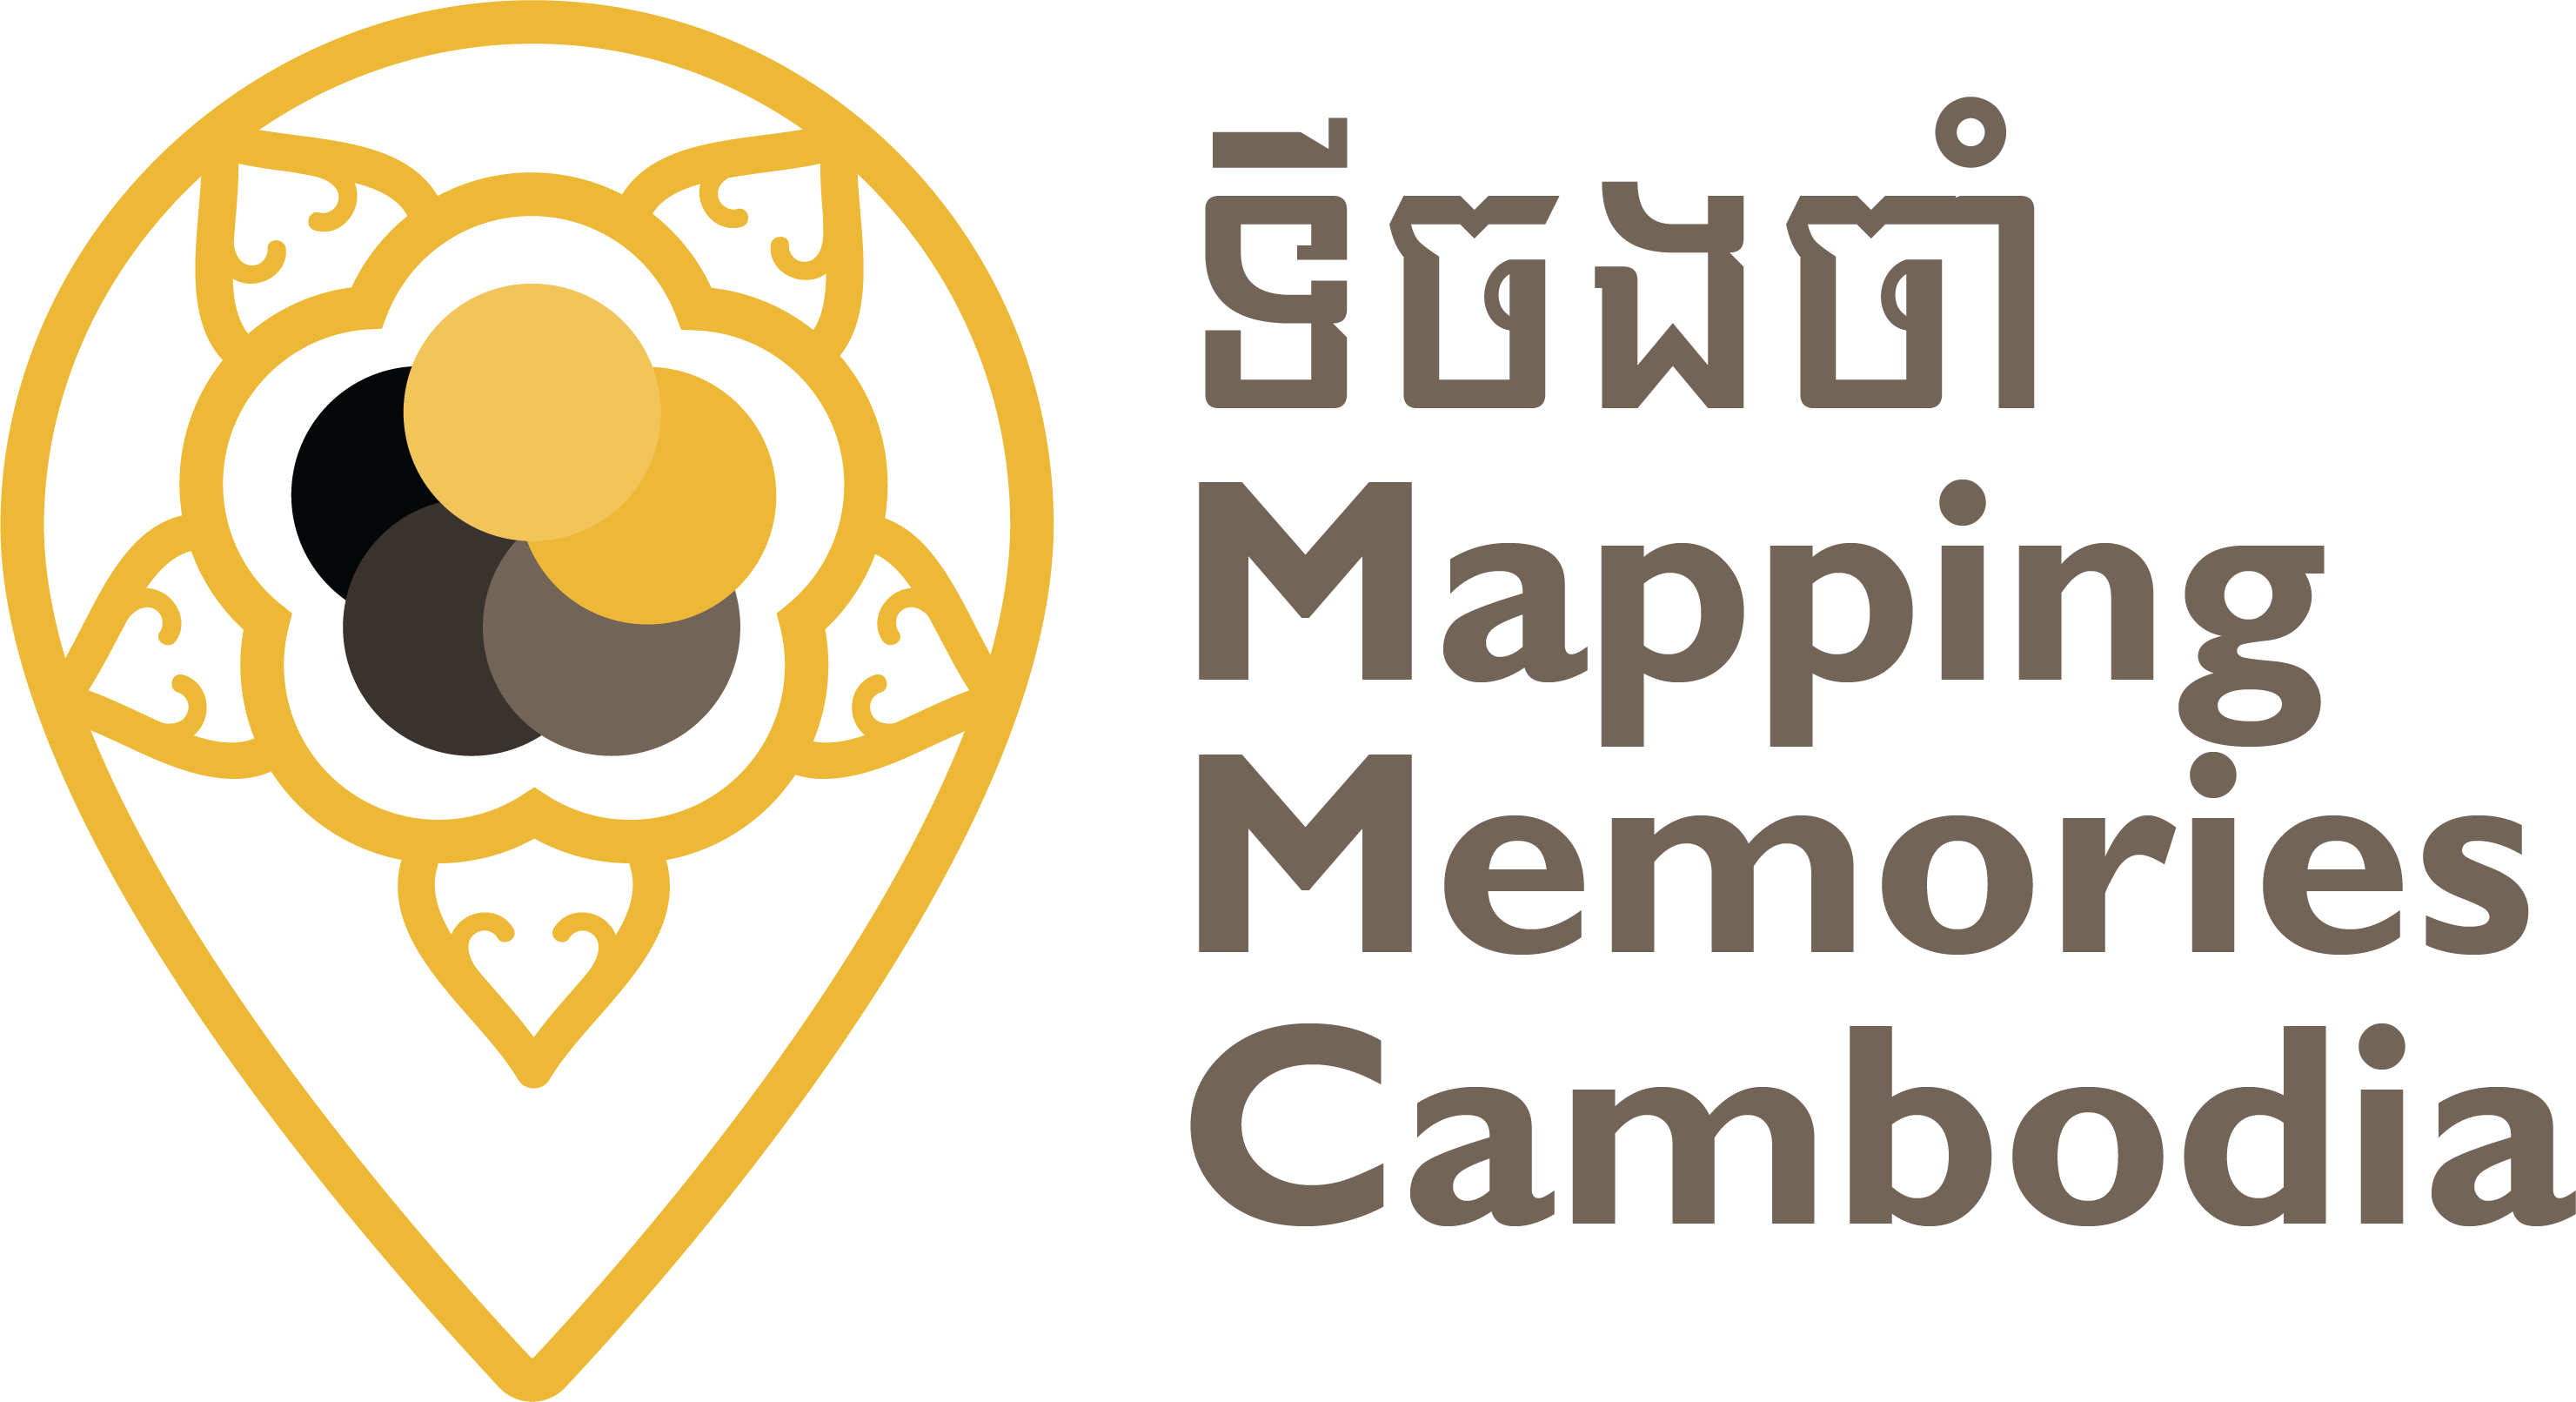 MMC Logo